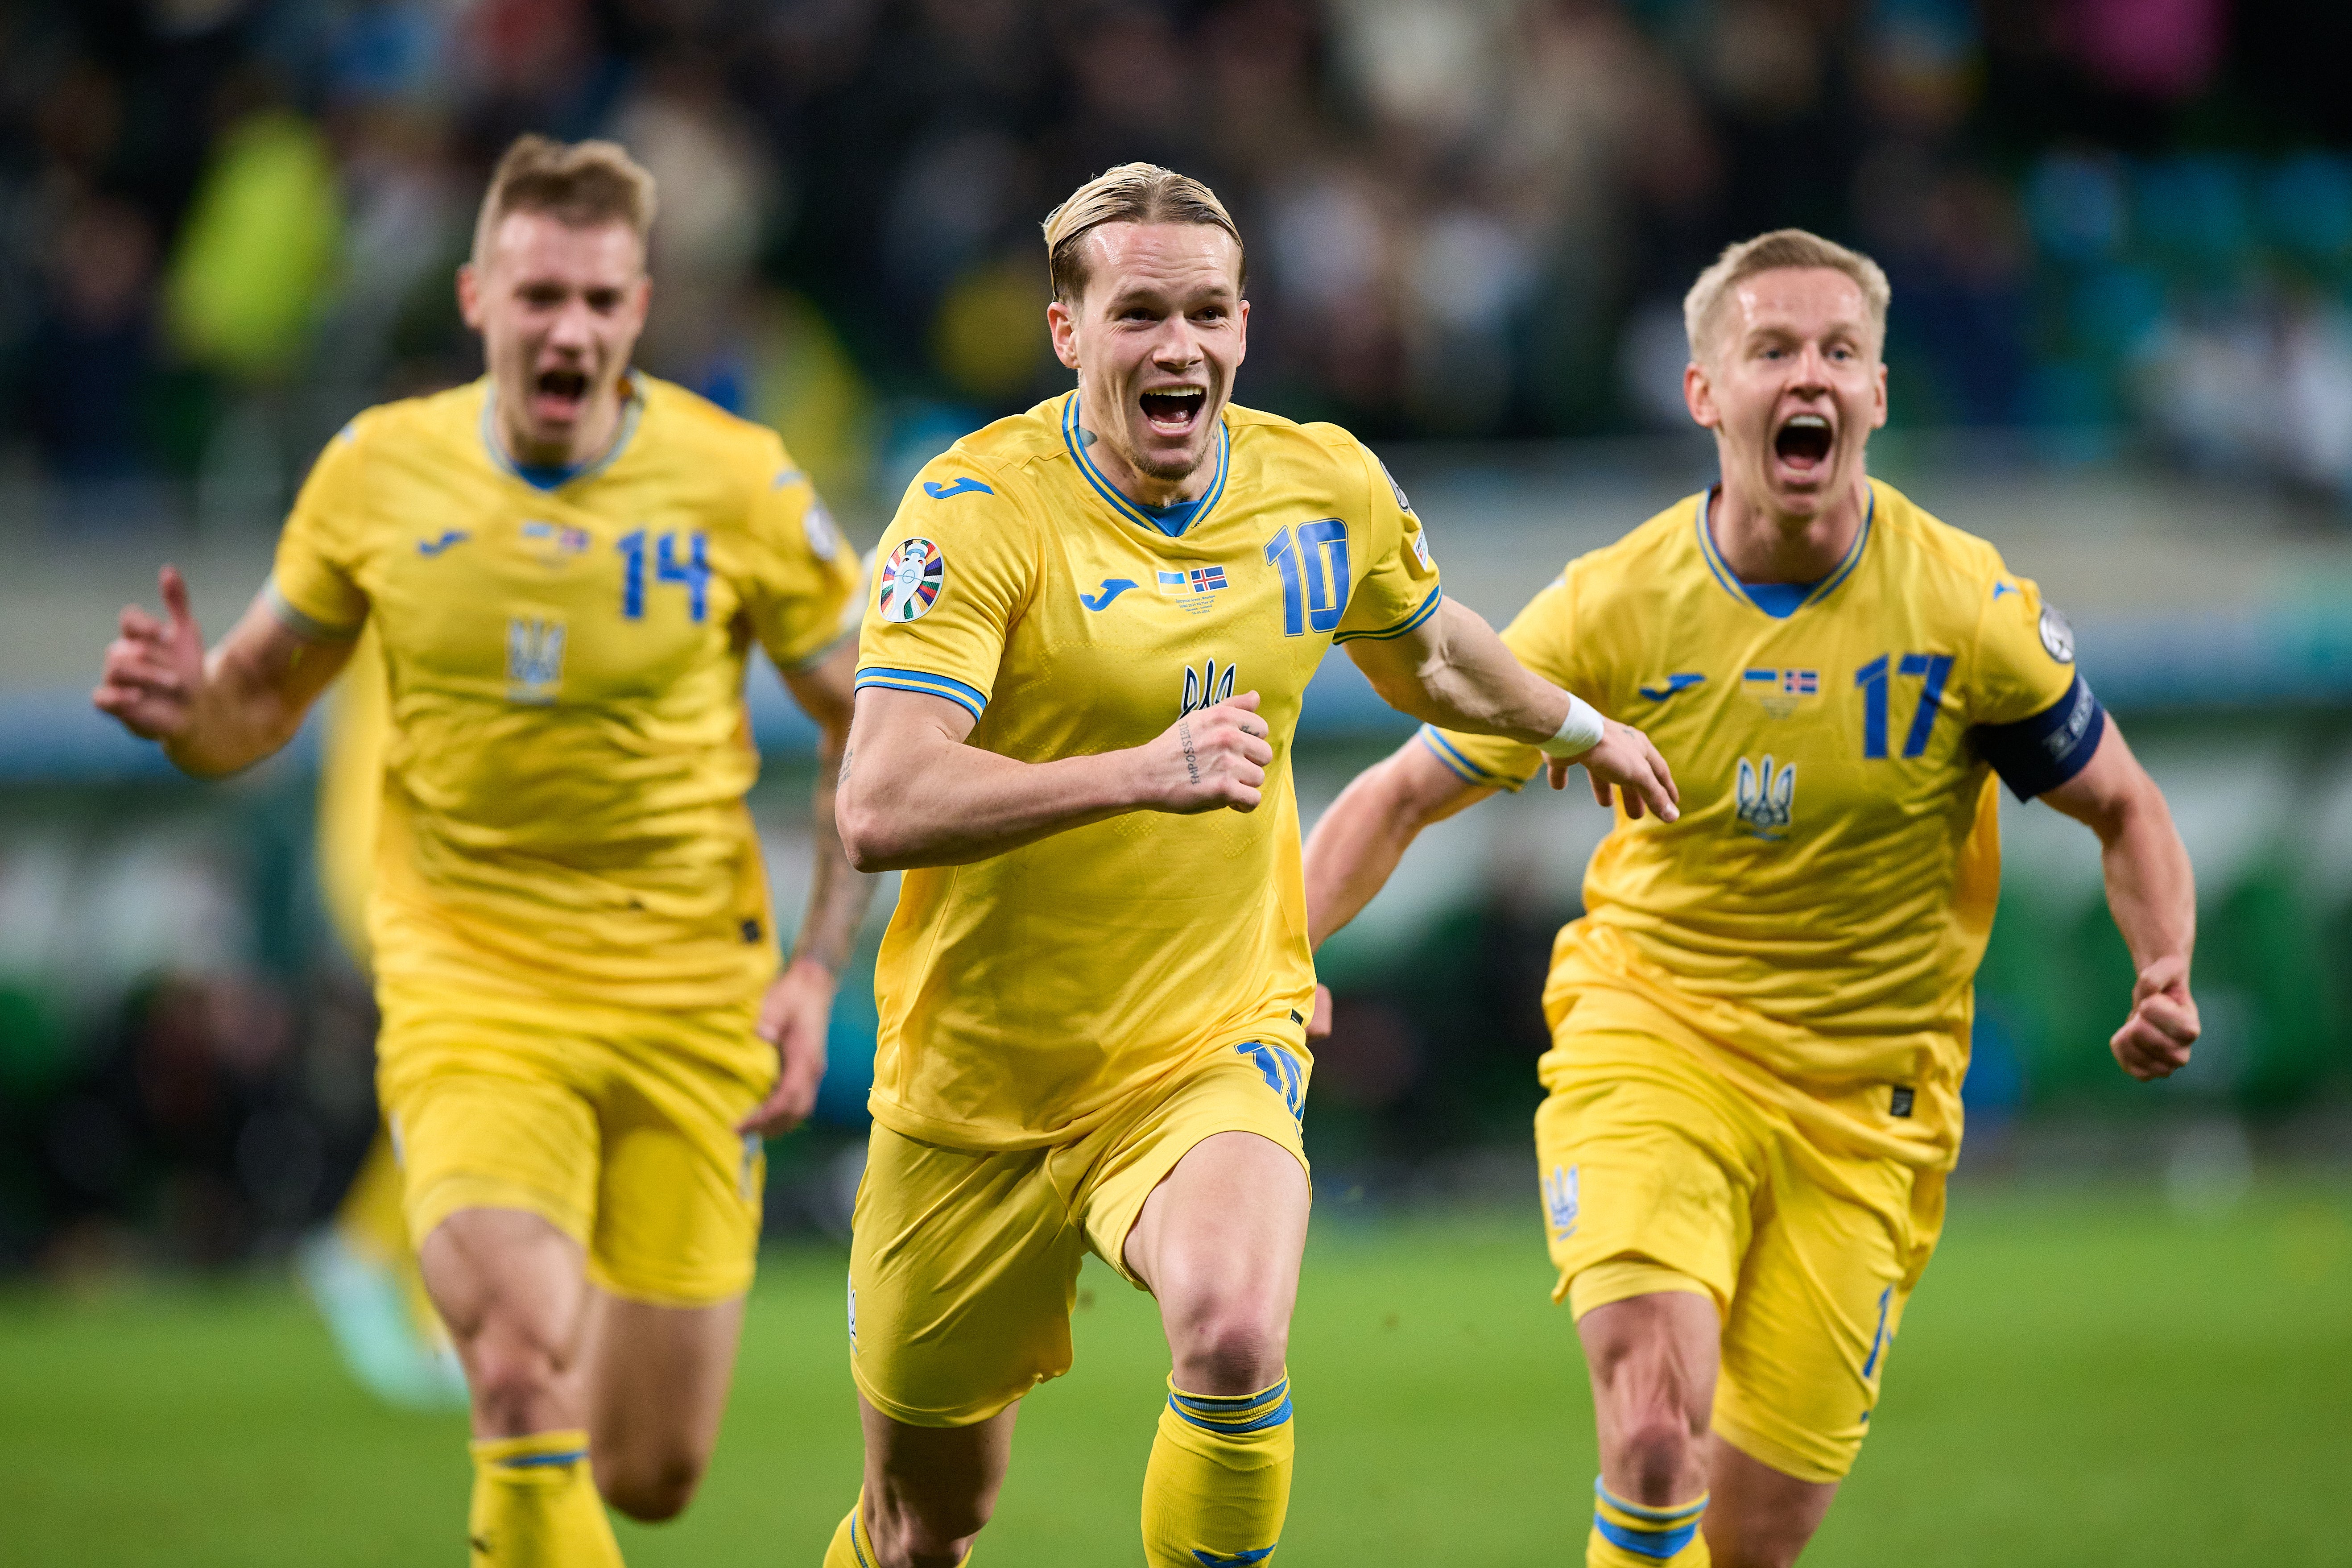 Chelsea winger Mykhailo Mudryk scored the goal to send Ukraine through